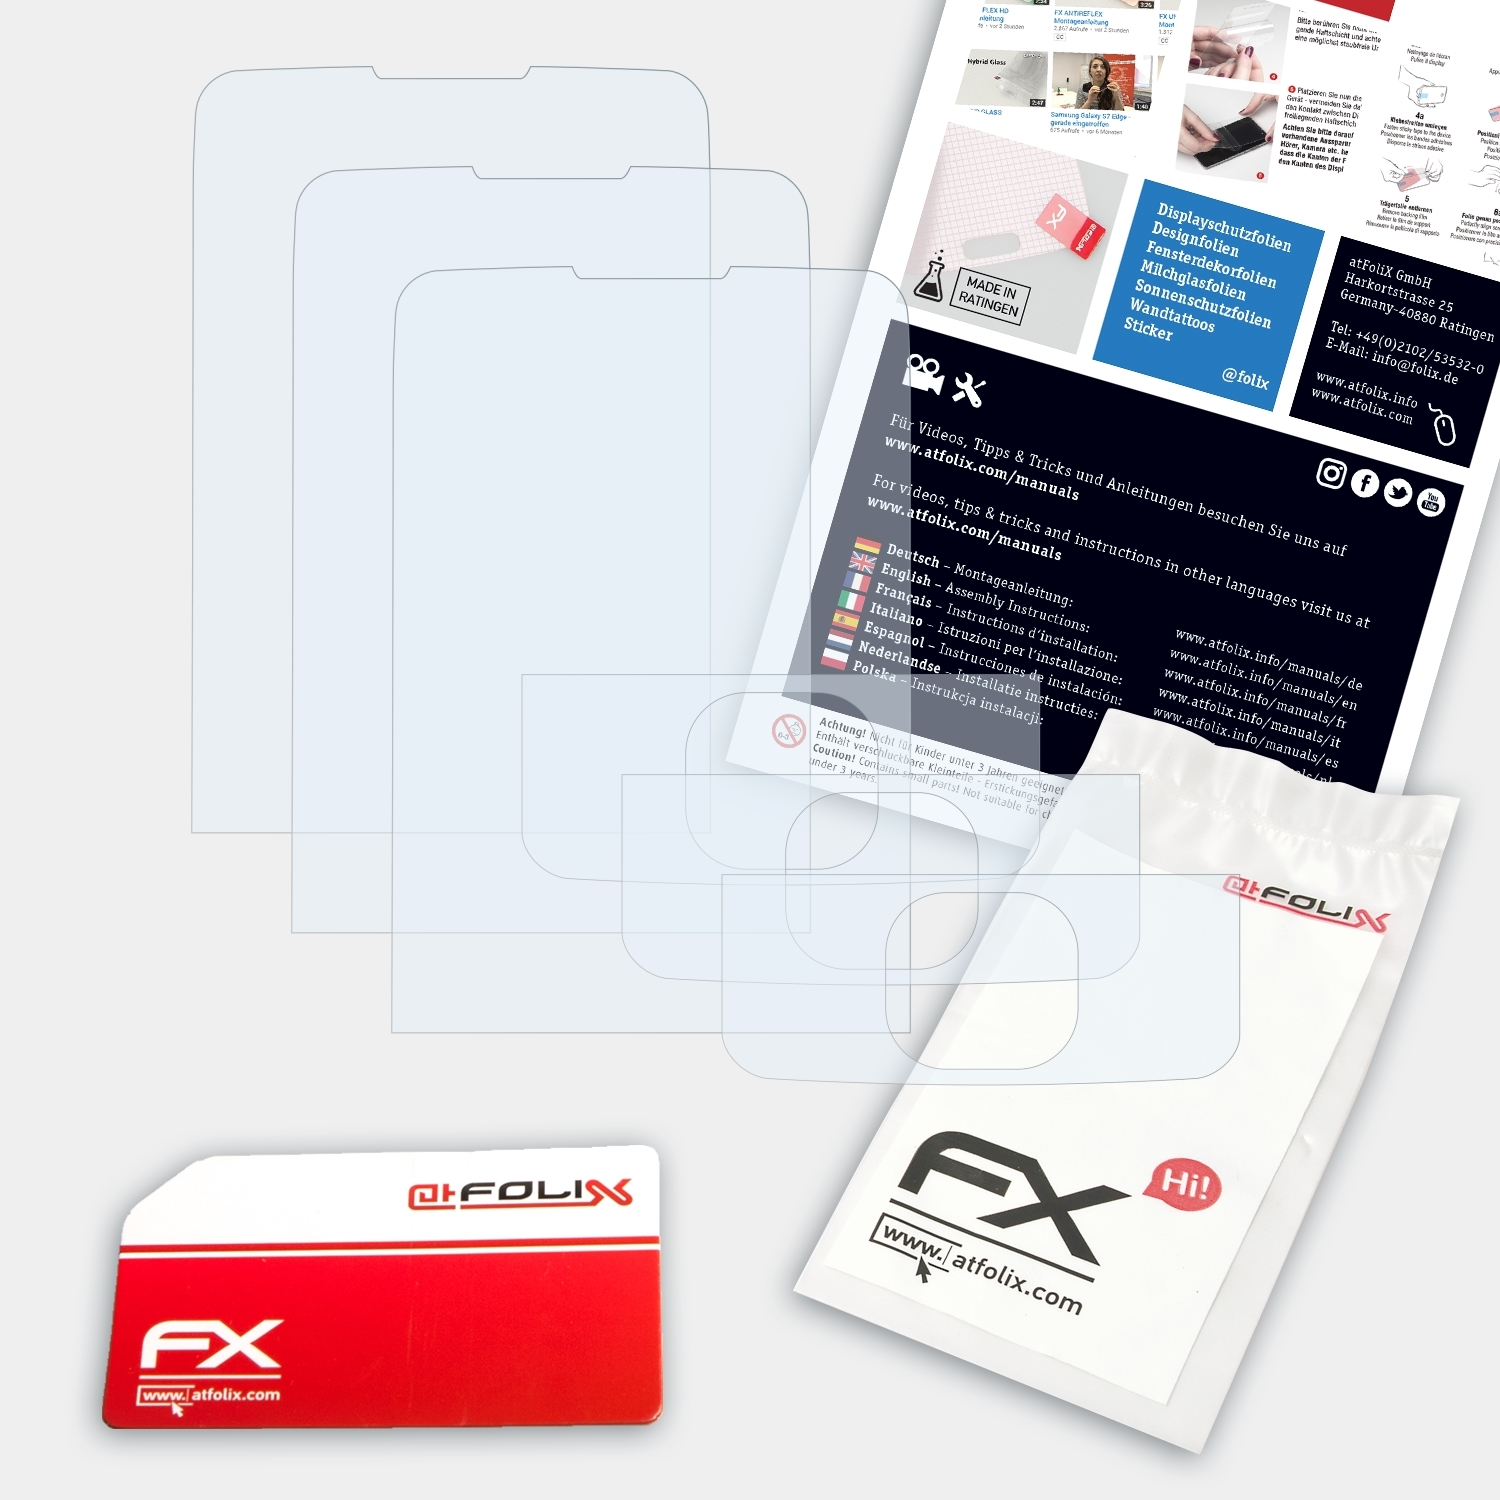 ATFOLIX 3x FX-Clear Displayschutz(für Nokia Classic) 6700